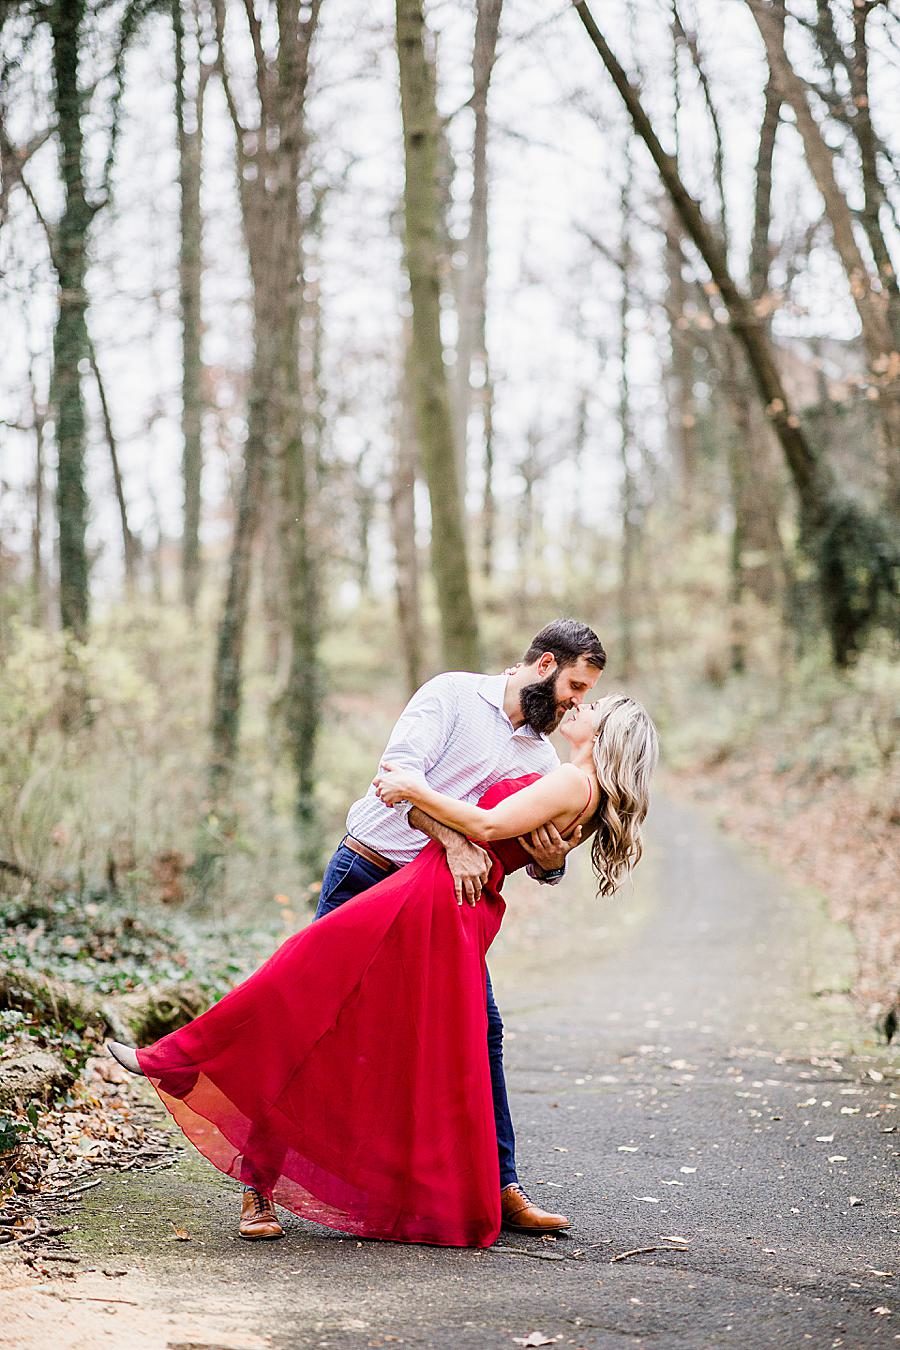 Dip kiss at this Third Creek Greenway by Knoxville Wedding Photographer, Amanda May Photos.